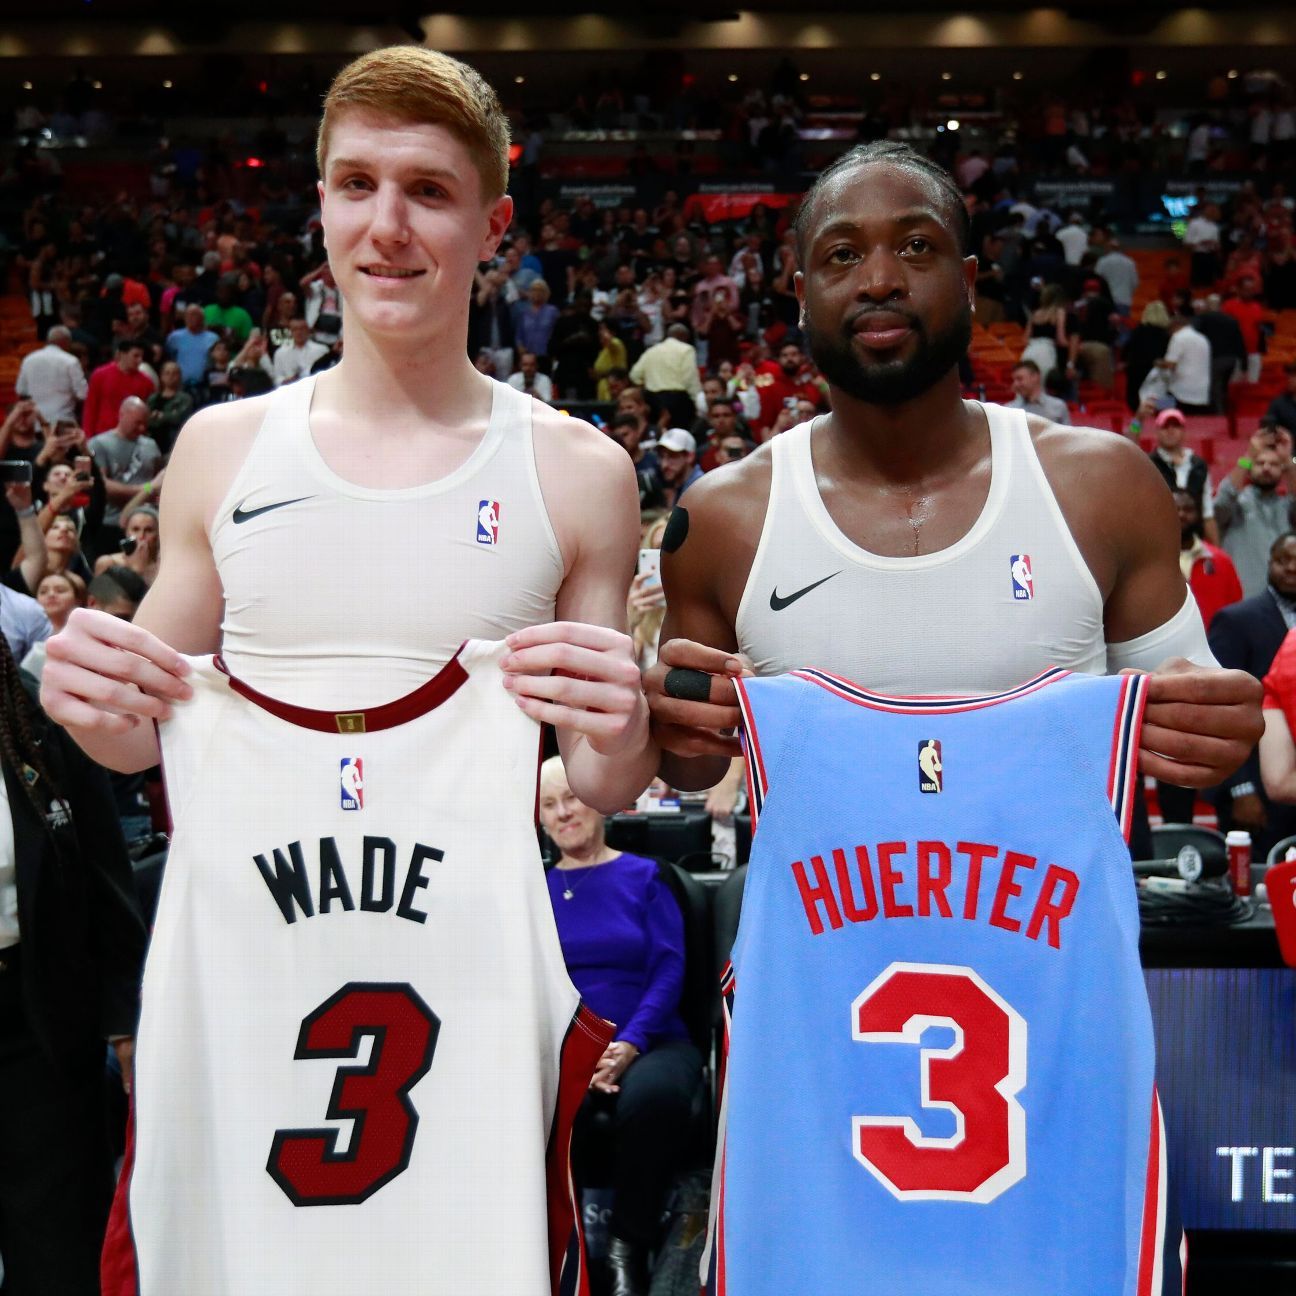 Wade shocks Hawks' Huerter with jersey swap - ESPN